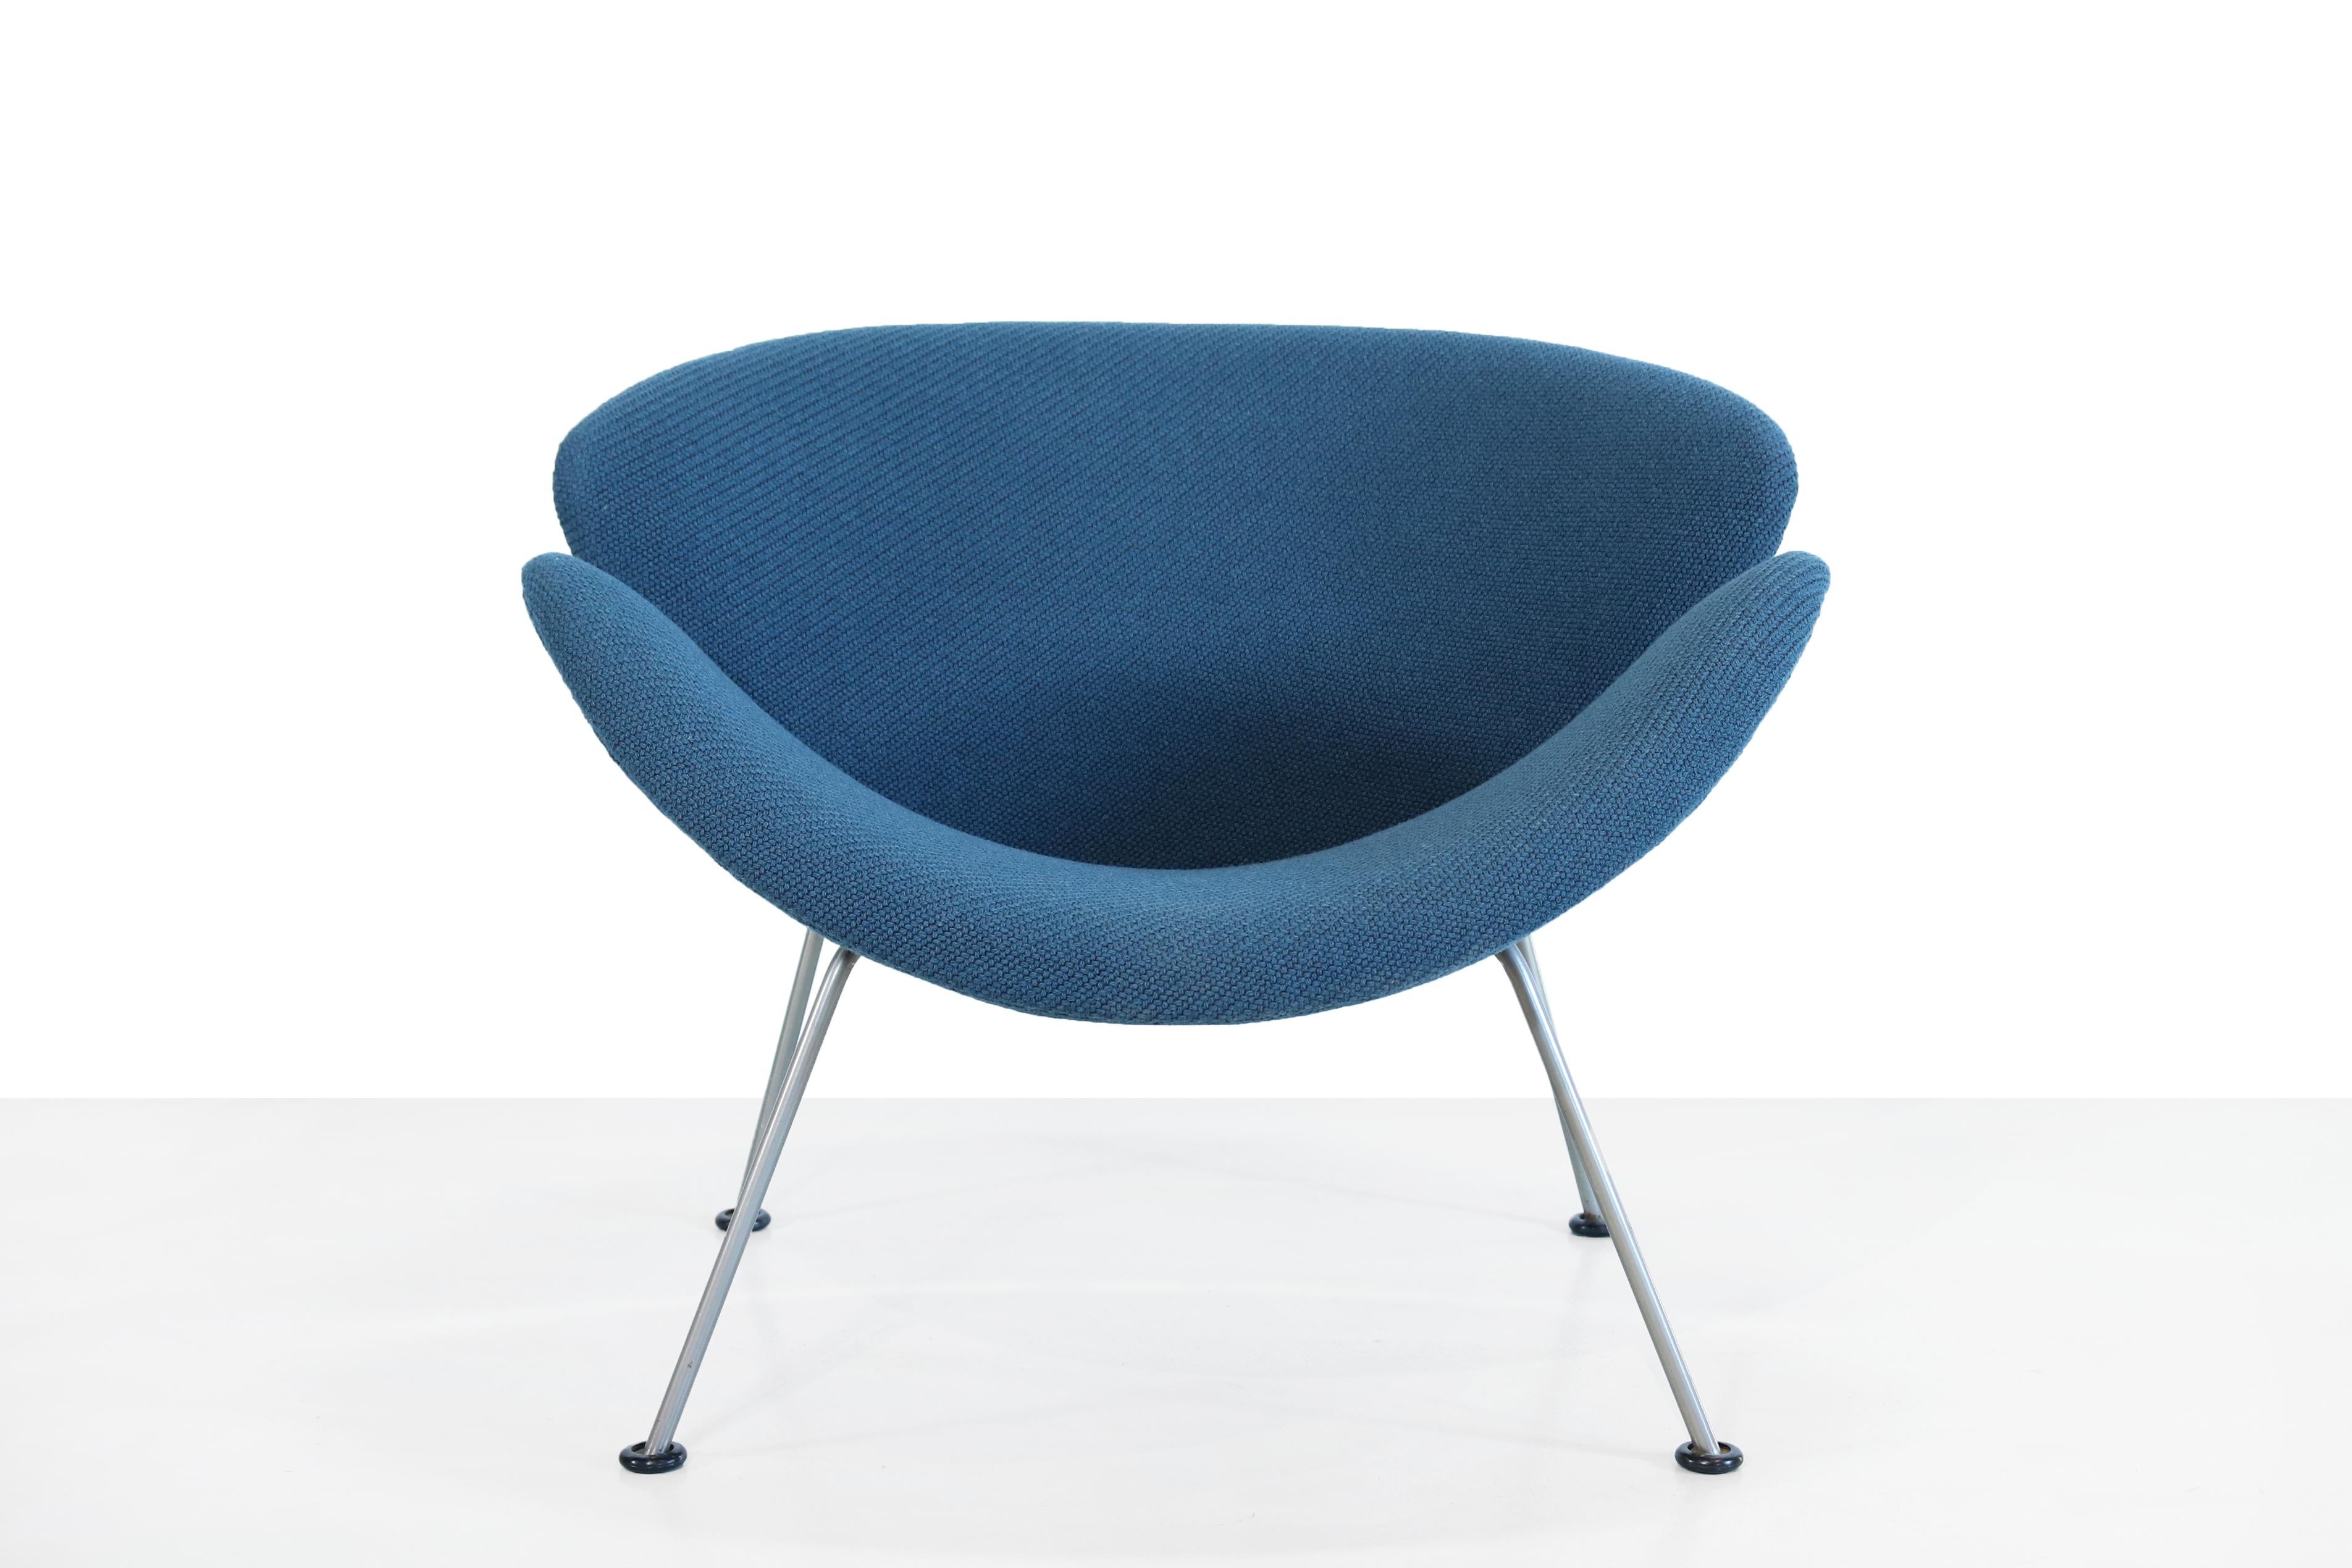 Belle icône design conçue par Pierre Paulin pour le fabricant néerlandais Artifort. Le fauteuil s'appelle Orange slice et se compose de deux coques identiques en bois de hêtre pressé qui ont été retapissées dans un tissu d'ameublement de haute